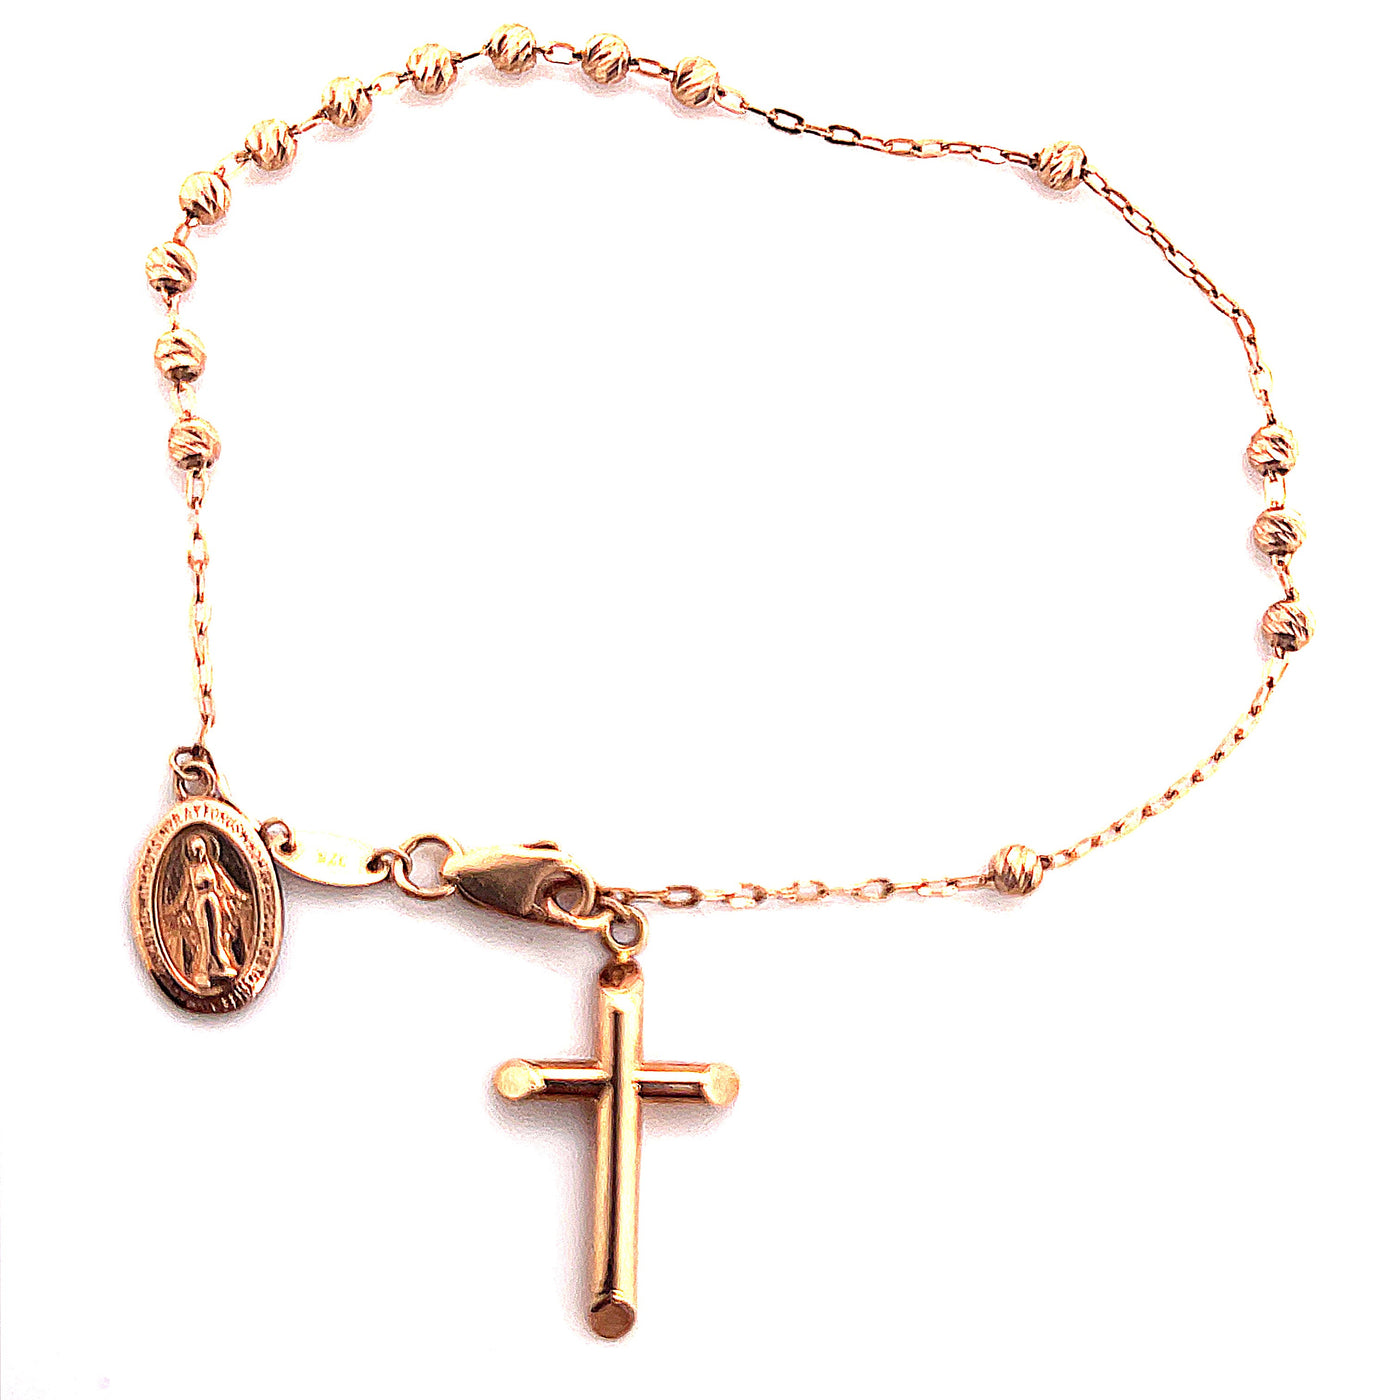 9K RG rosary bracelet with dangling cross